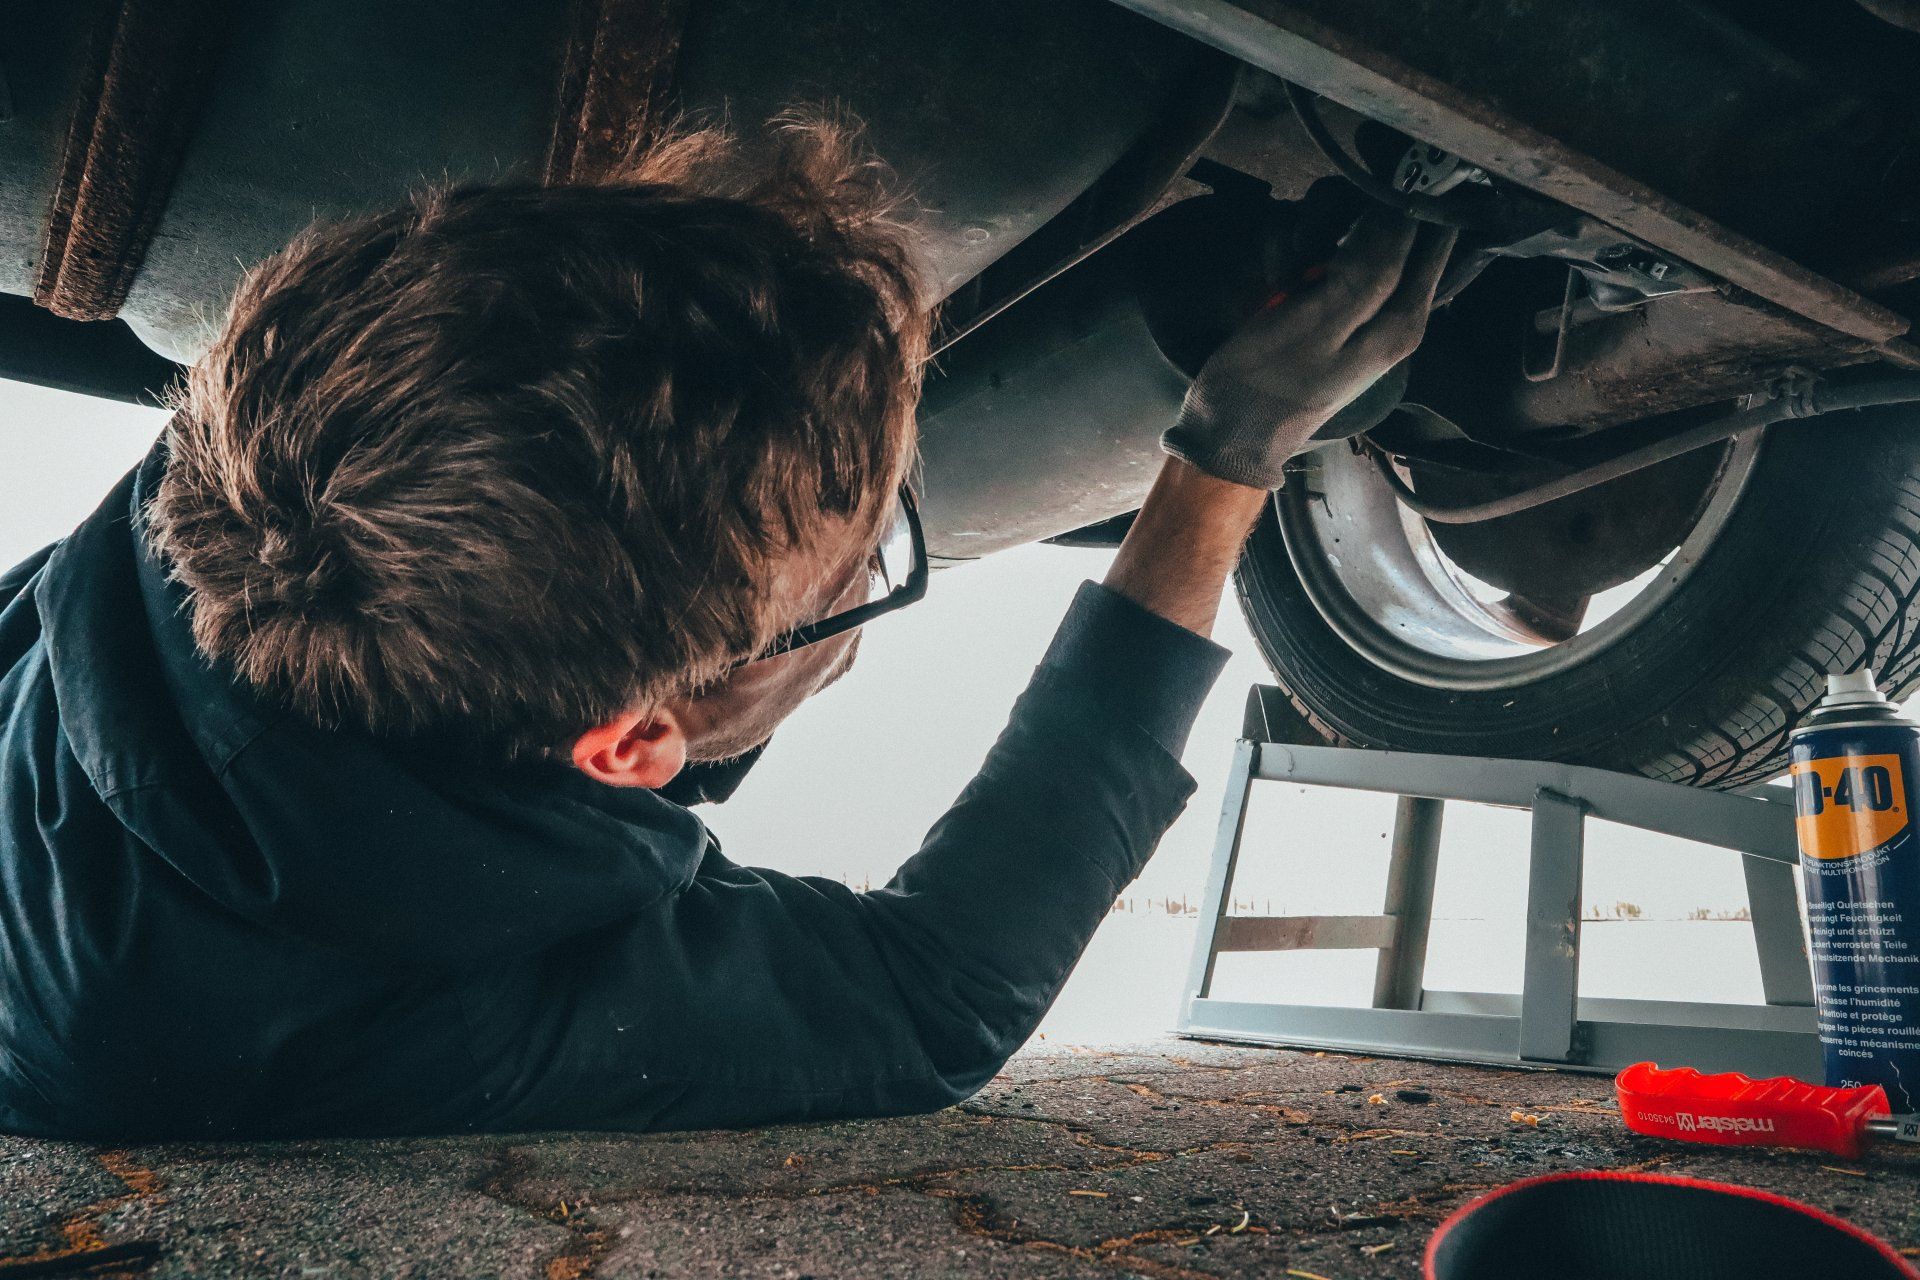  Car Engine Repair Services | Brock's Car Repair